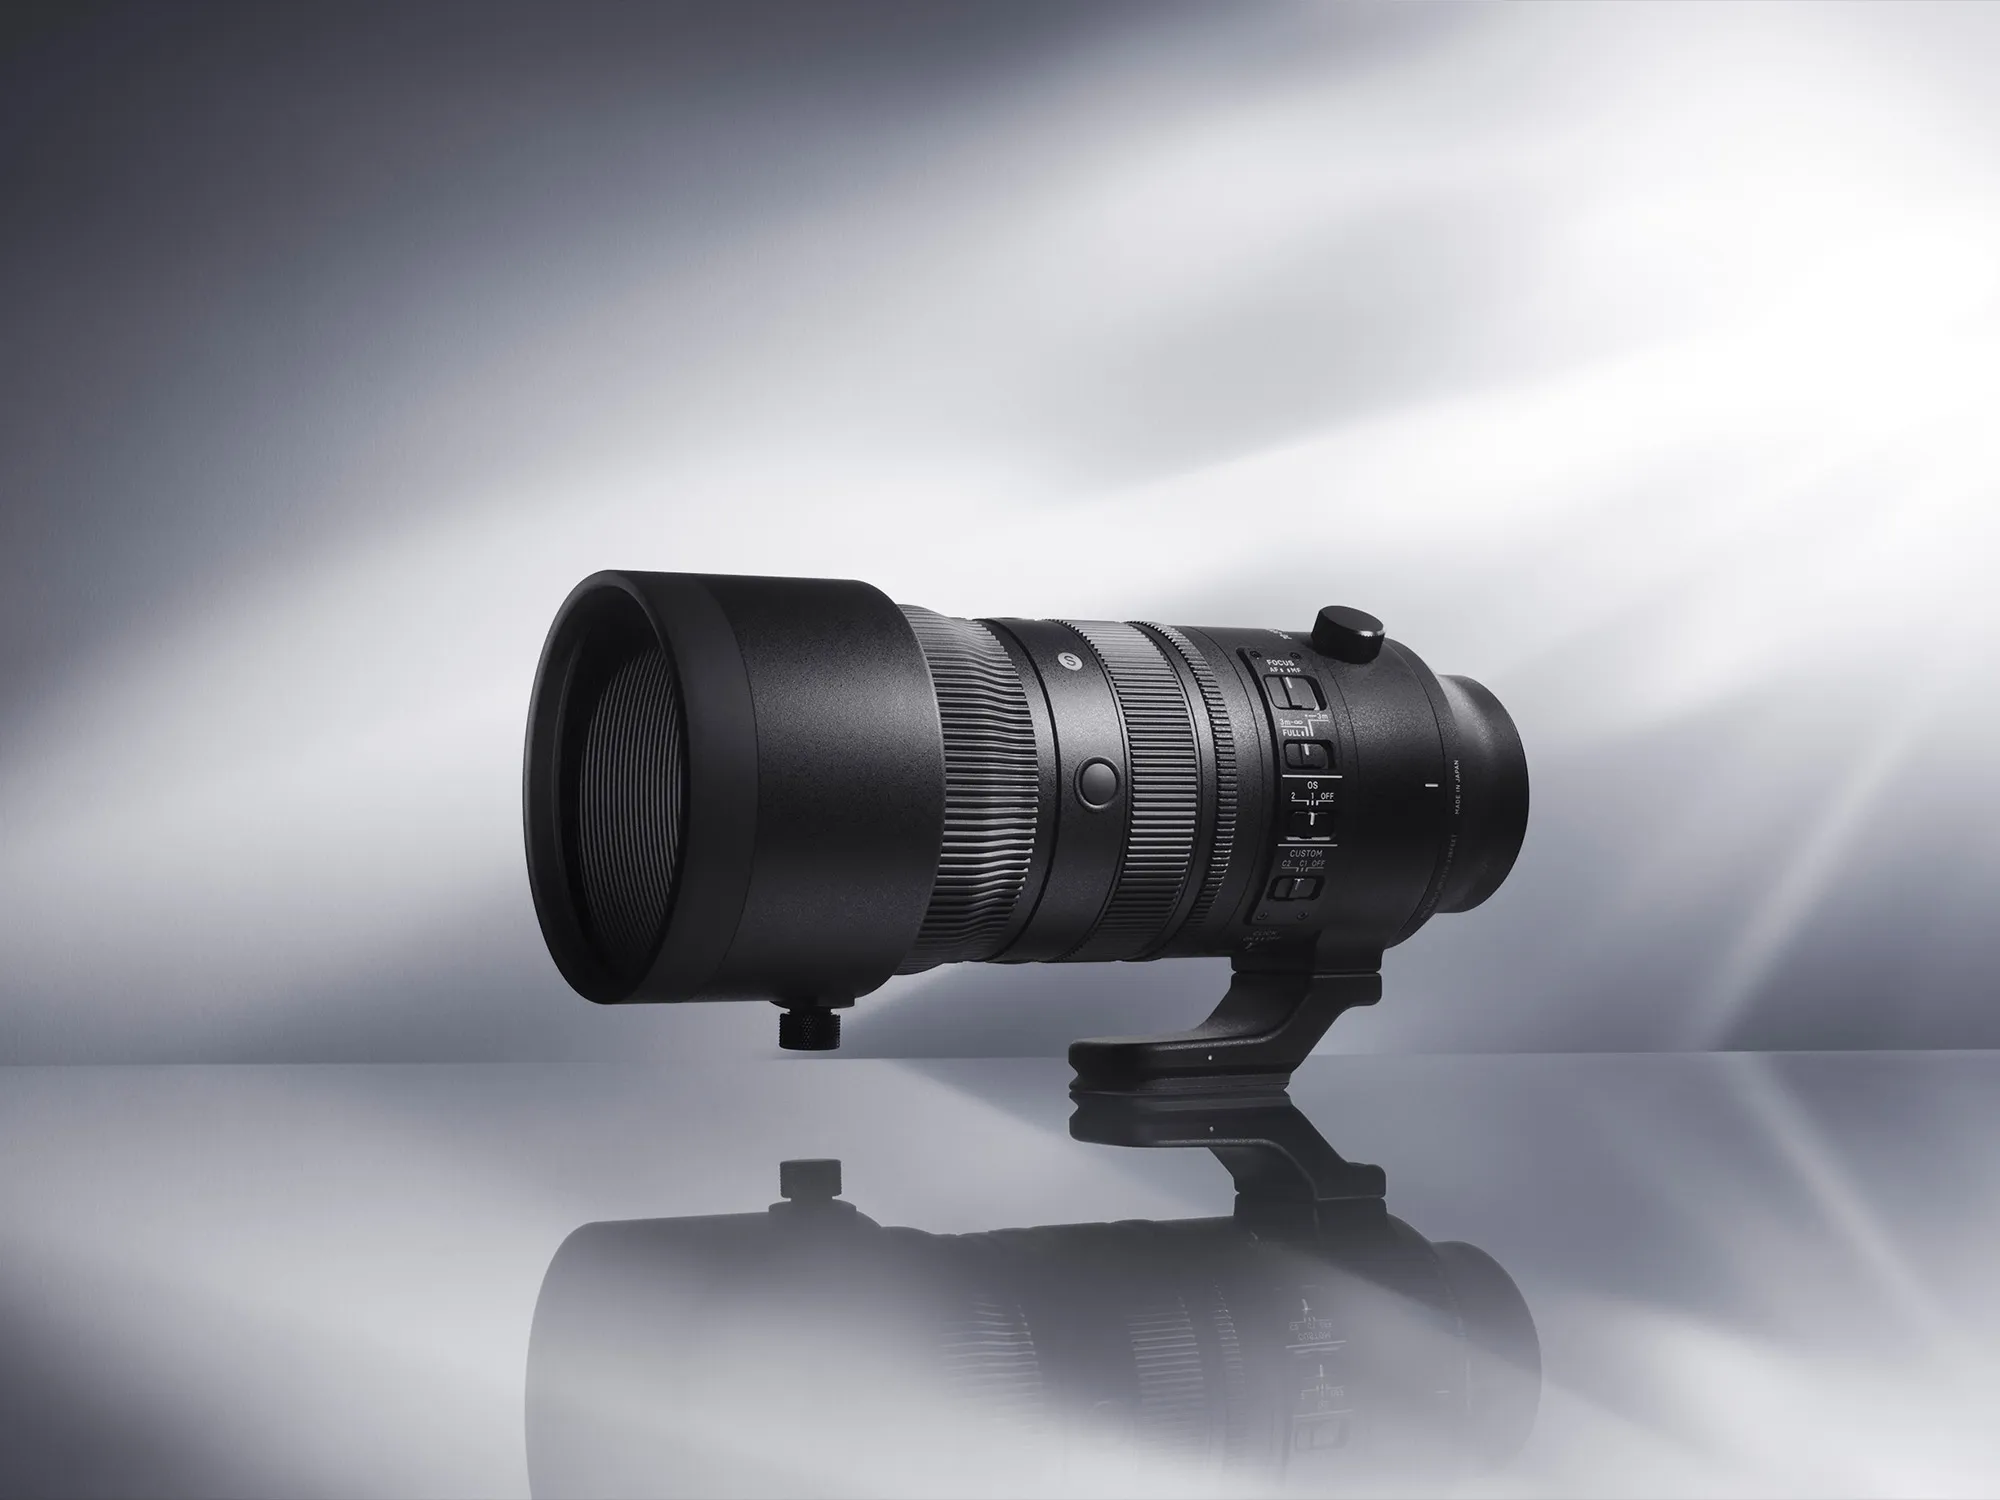 Ống kính Sigma 70-200mm F2.8 DG DN OS Sports cho Sony E